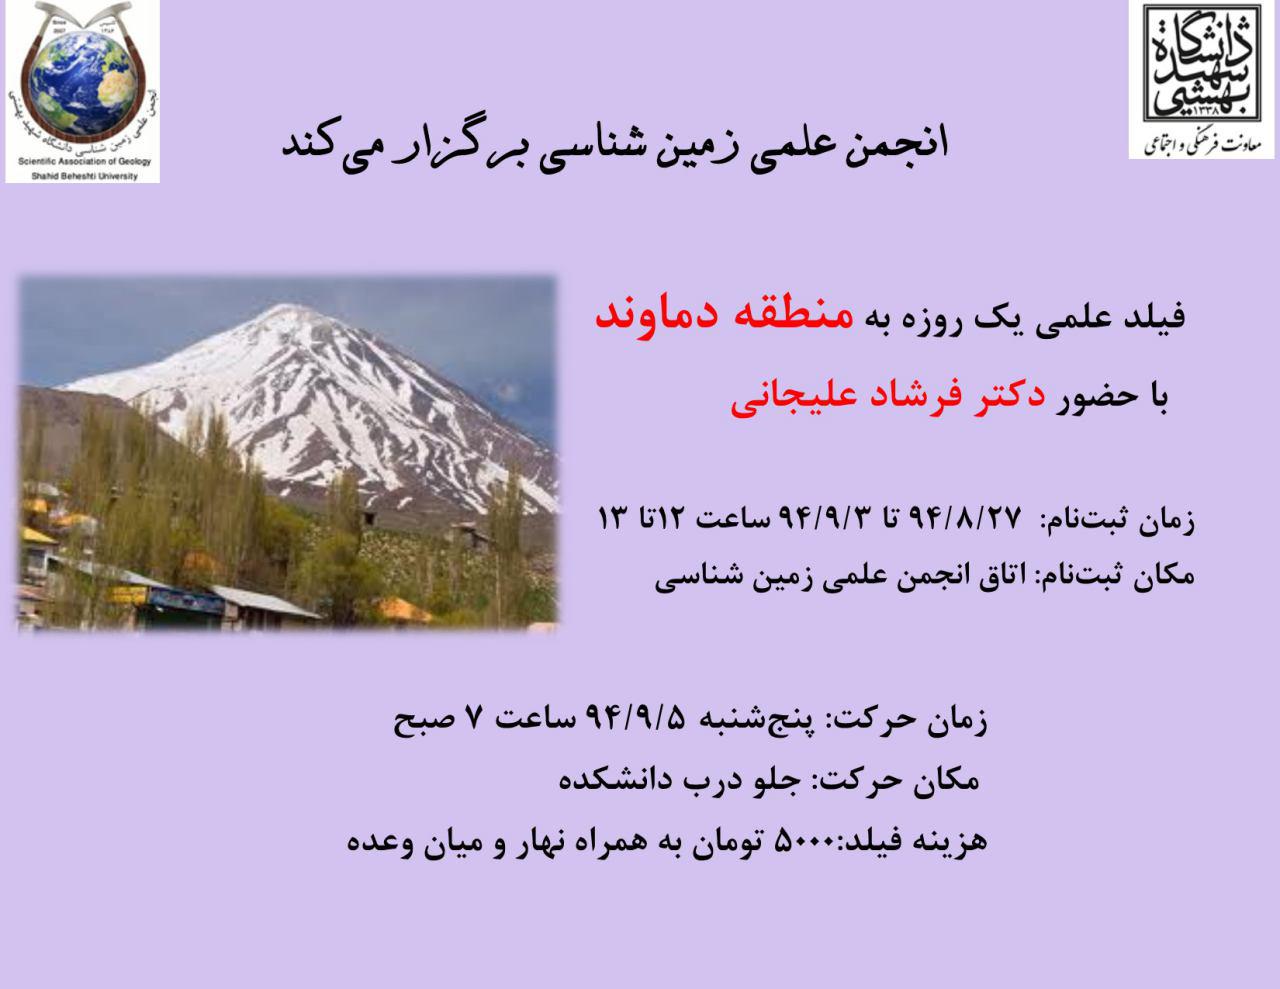 انجمن علمی زمین شناسی دانشگاه شهیدبهشتی تهران|شرکت زرآزما و دانشگاه